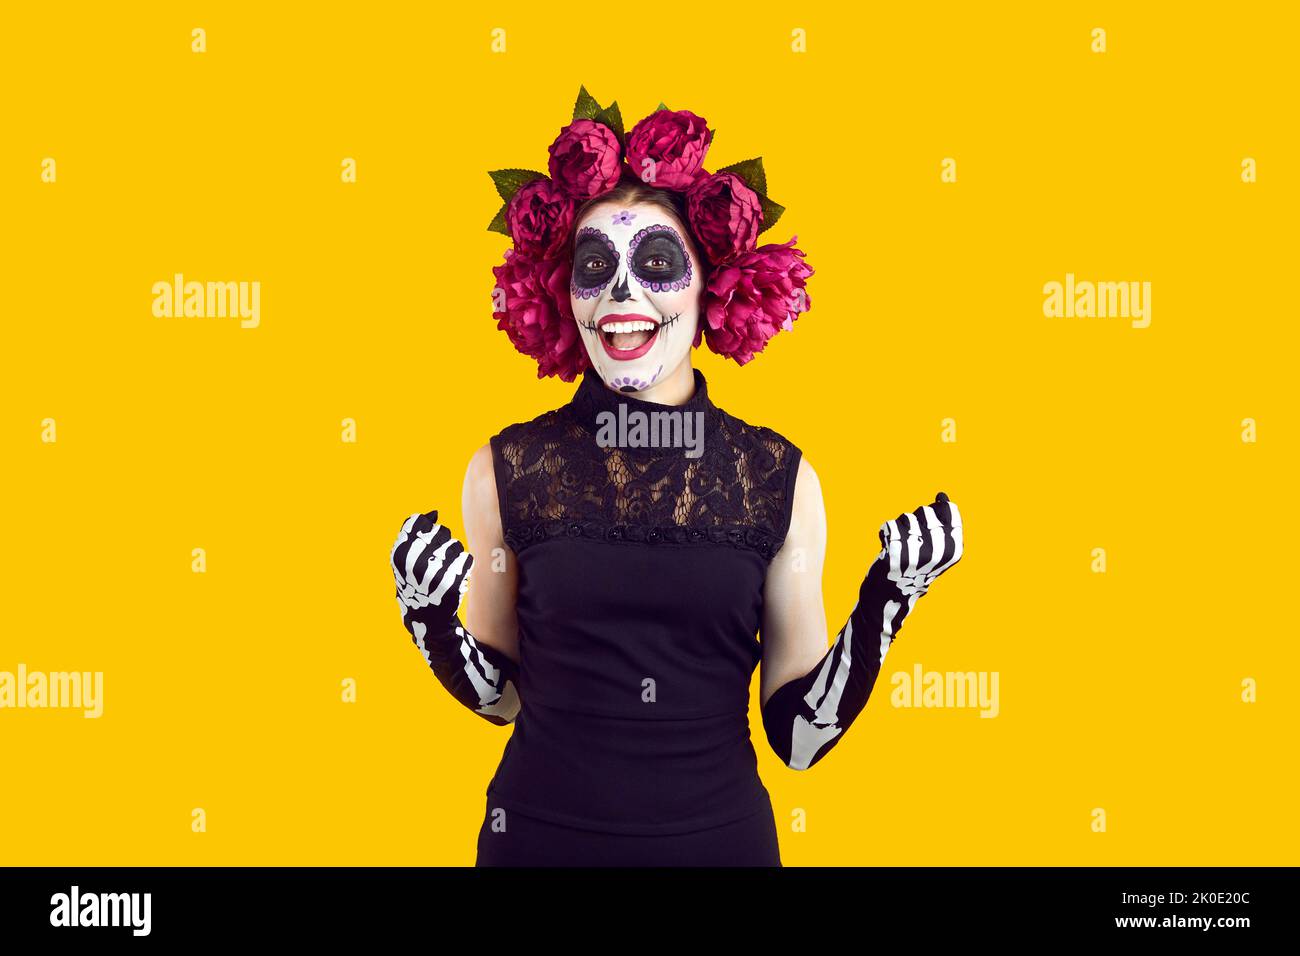 Cheefrul femme folle en costume d'Halloween avec couronne de fleurs roses et maquillage effrayant. Banque D'Images